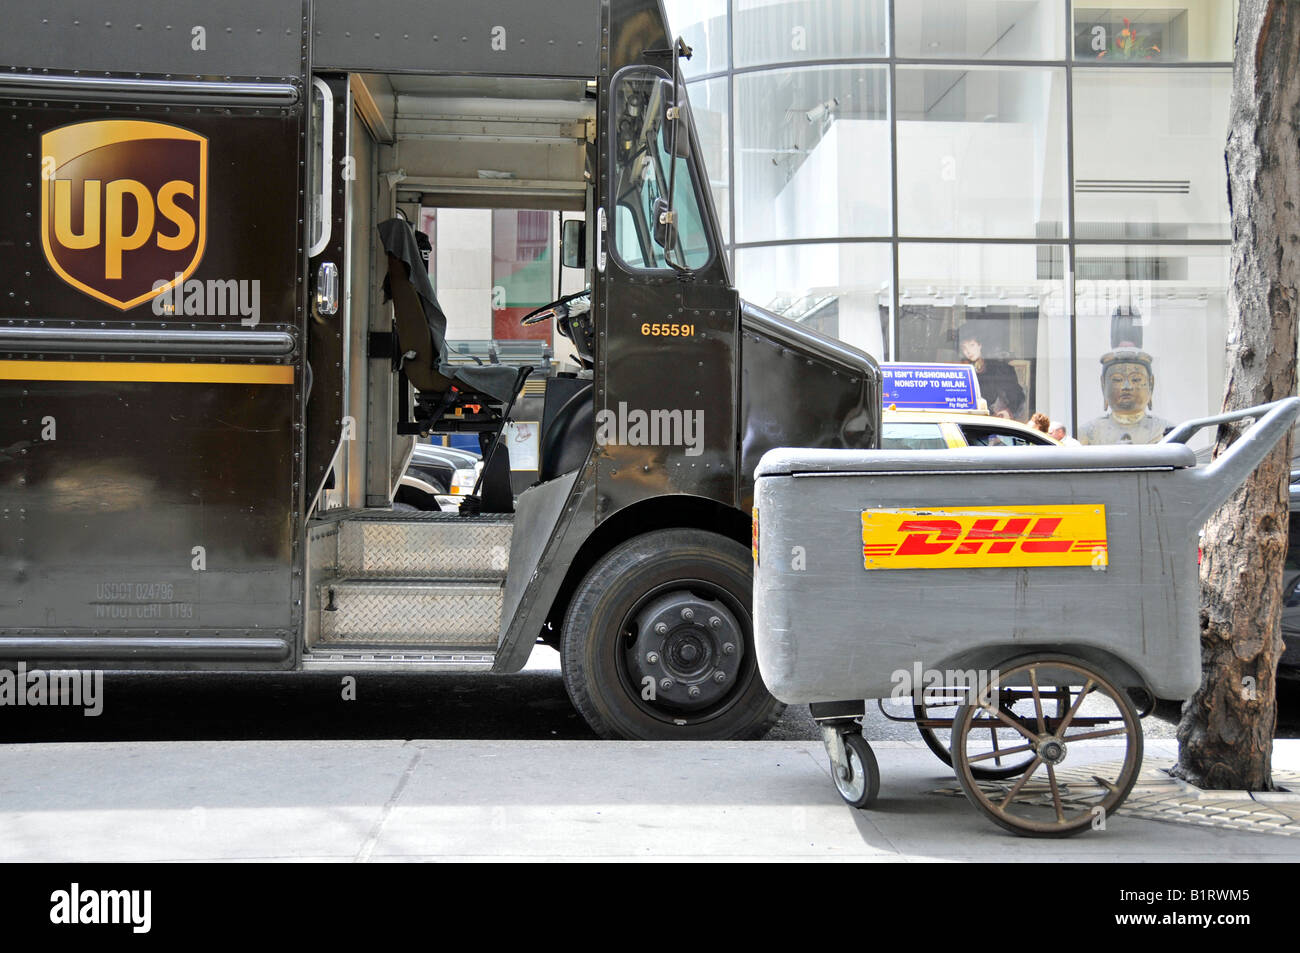 Consegna UPS van accanto a una consegna DHL Carrello, Manhattan, New York City, Stati Uniti d'America Foto Stock